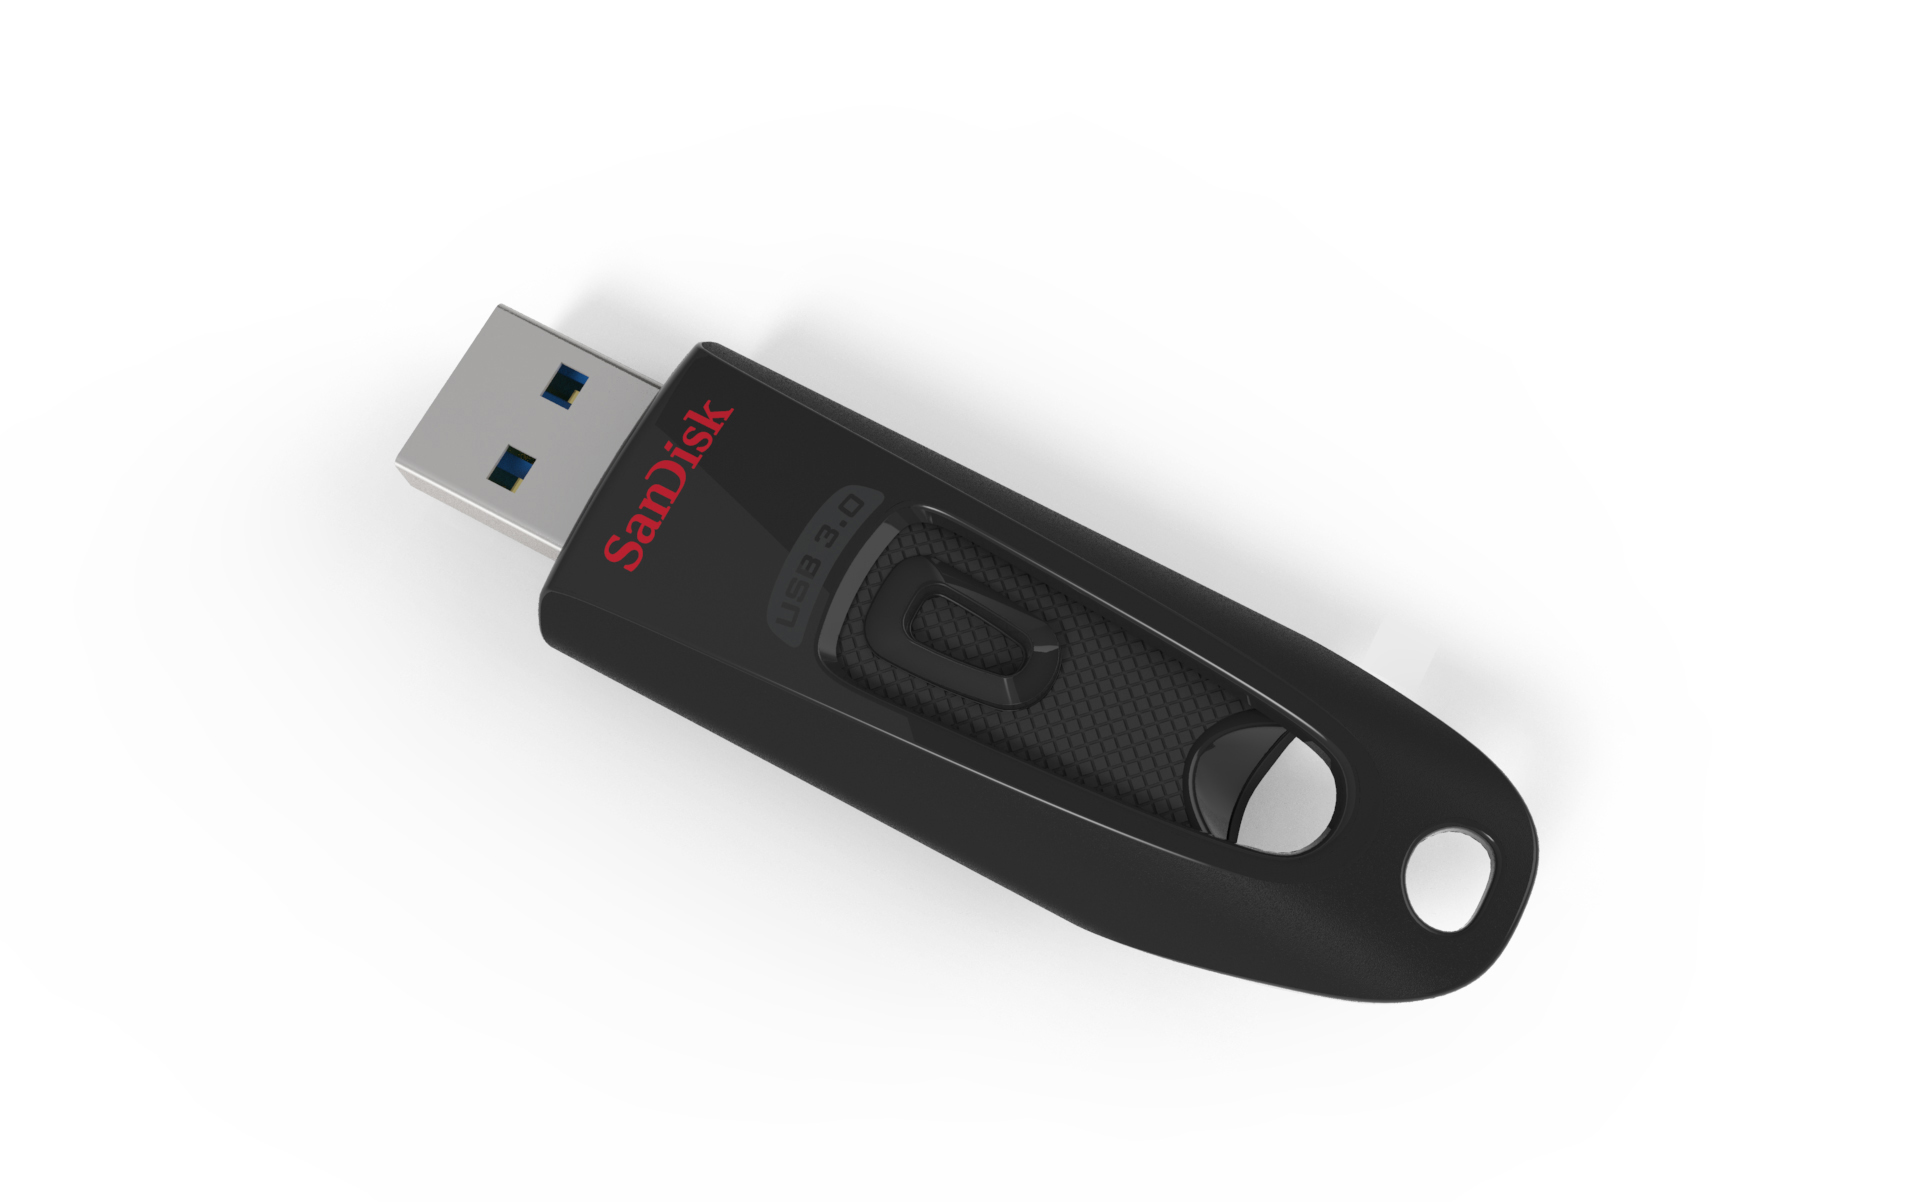 SANDISK Cruzer Schwarz Ultra 16 100 MB/s, GB, USB-Stick